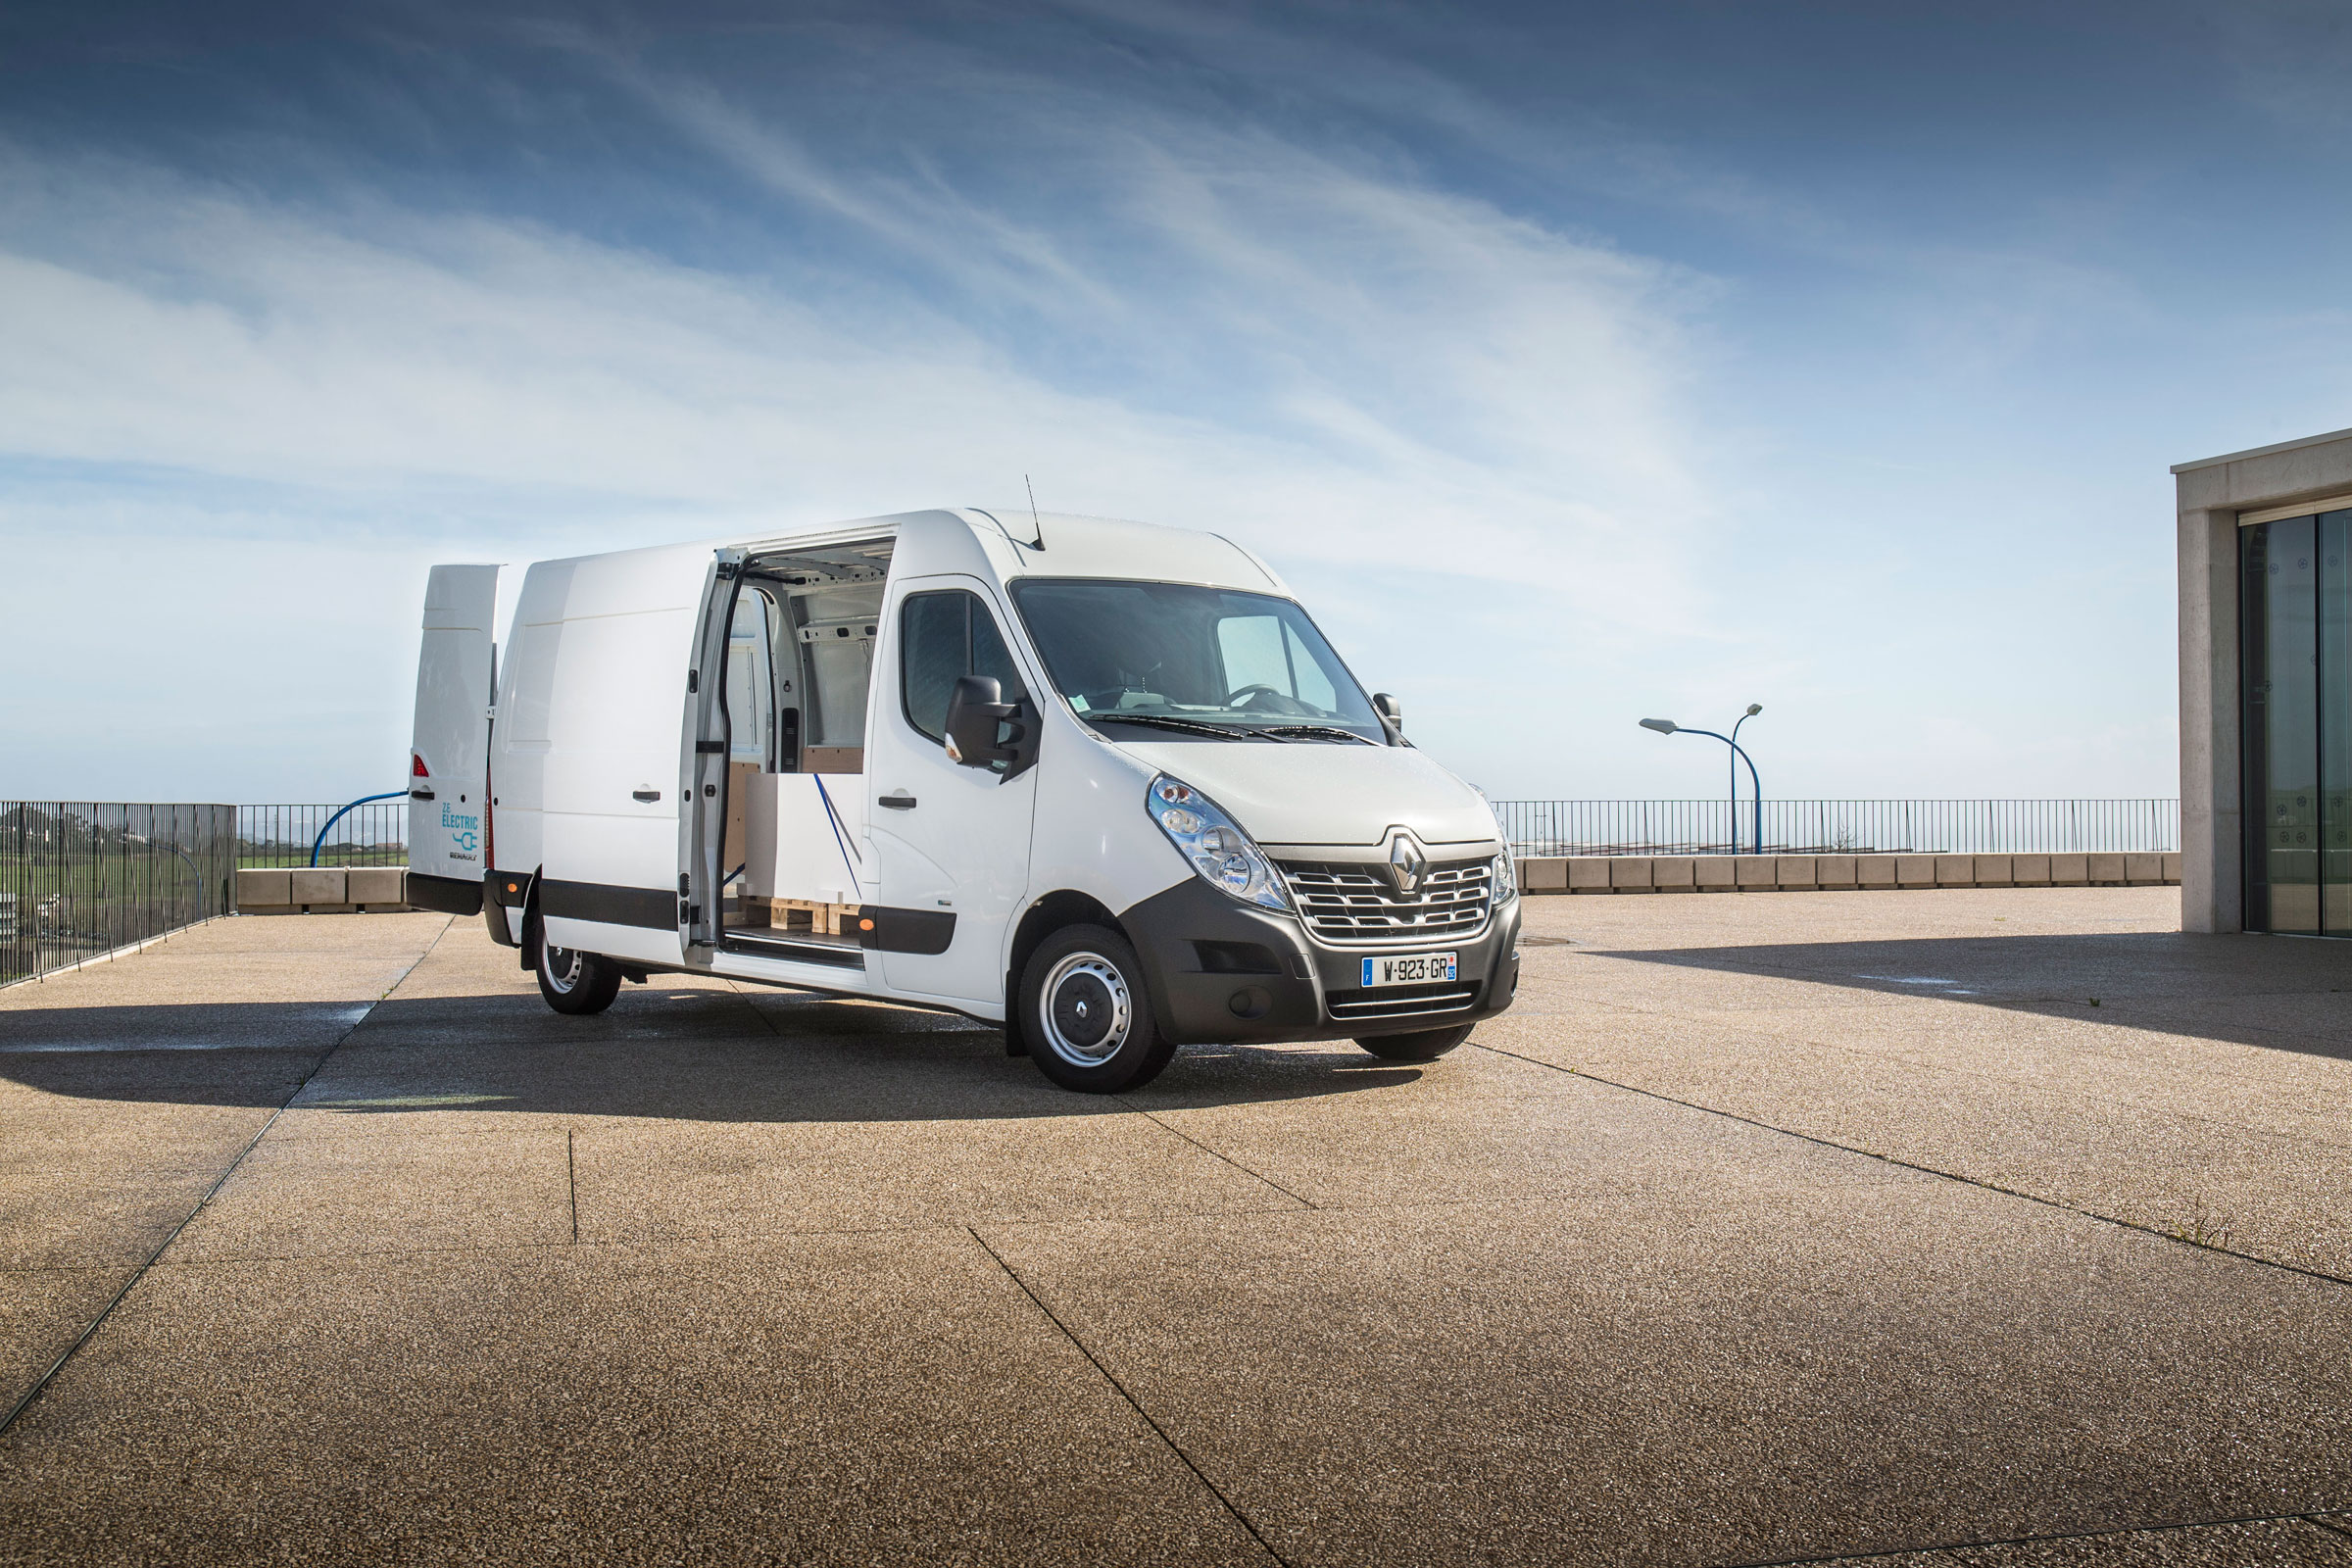 Renault Master ZE, the new van 100% electric - New Vans - Planet Trucks